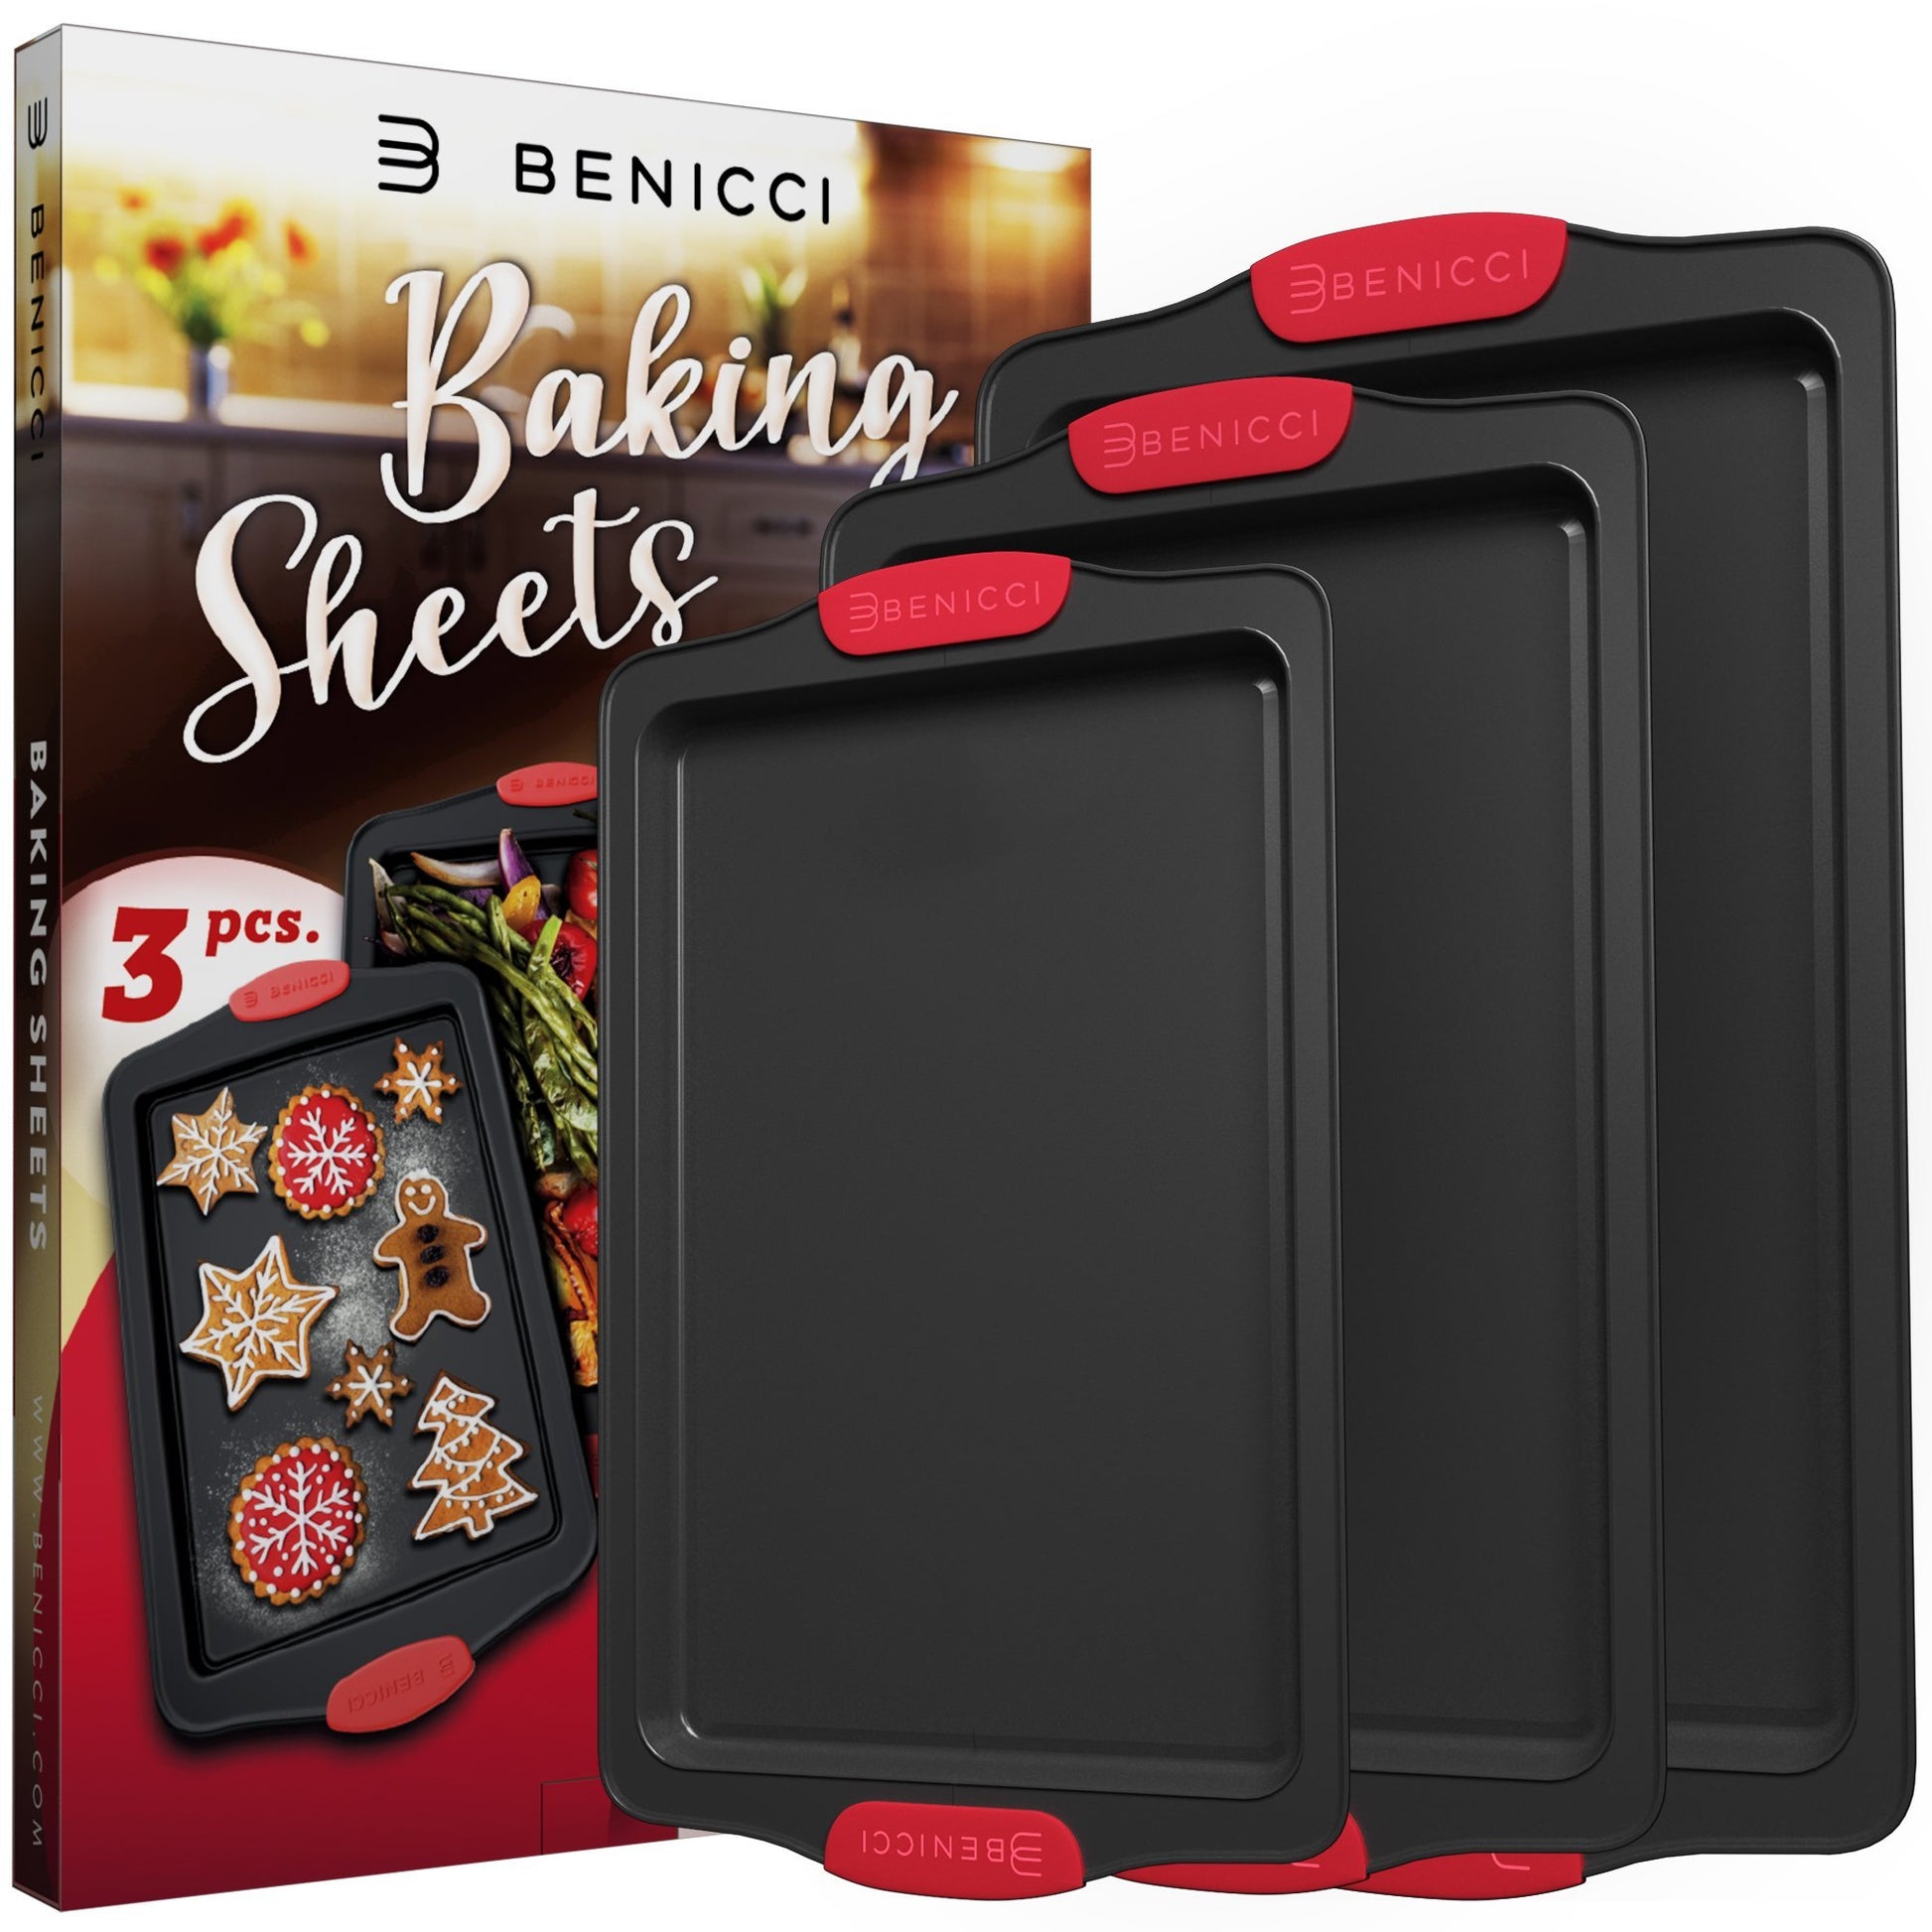 USA Pan 3-Piece Non-Stick Bakeware Set